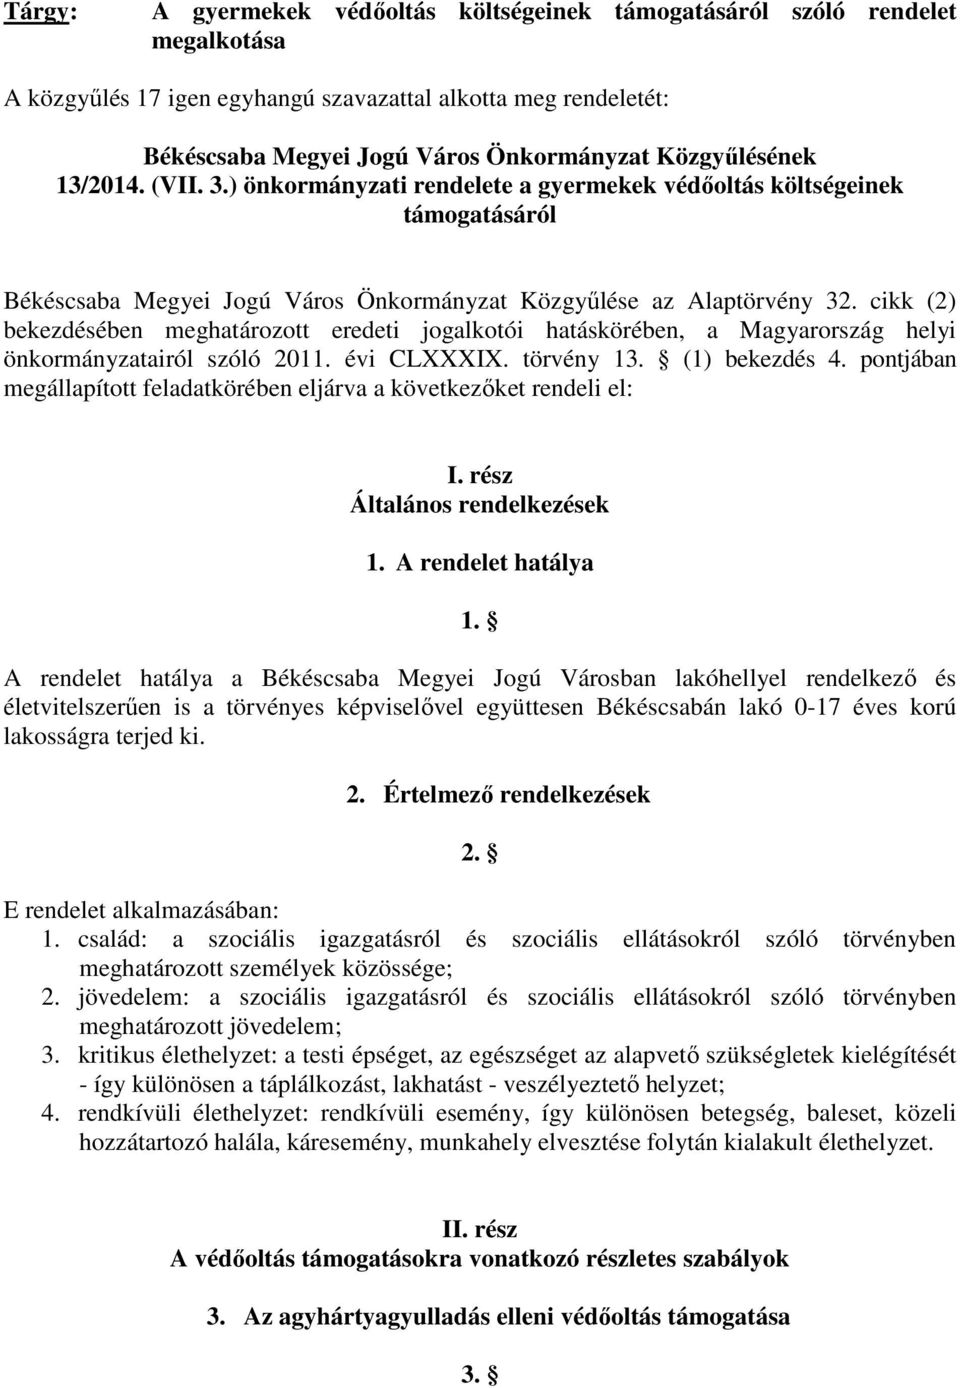 cikk (2) bekezdésében meghatározott eredeti jogalkotói hatáskörében, a Magyarország helyi önkormányzatairól szóló 2011. évi CLXXXIX. törvény 13. (1) bekezdés 4.